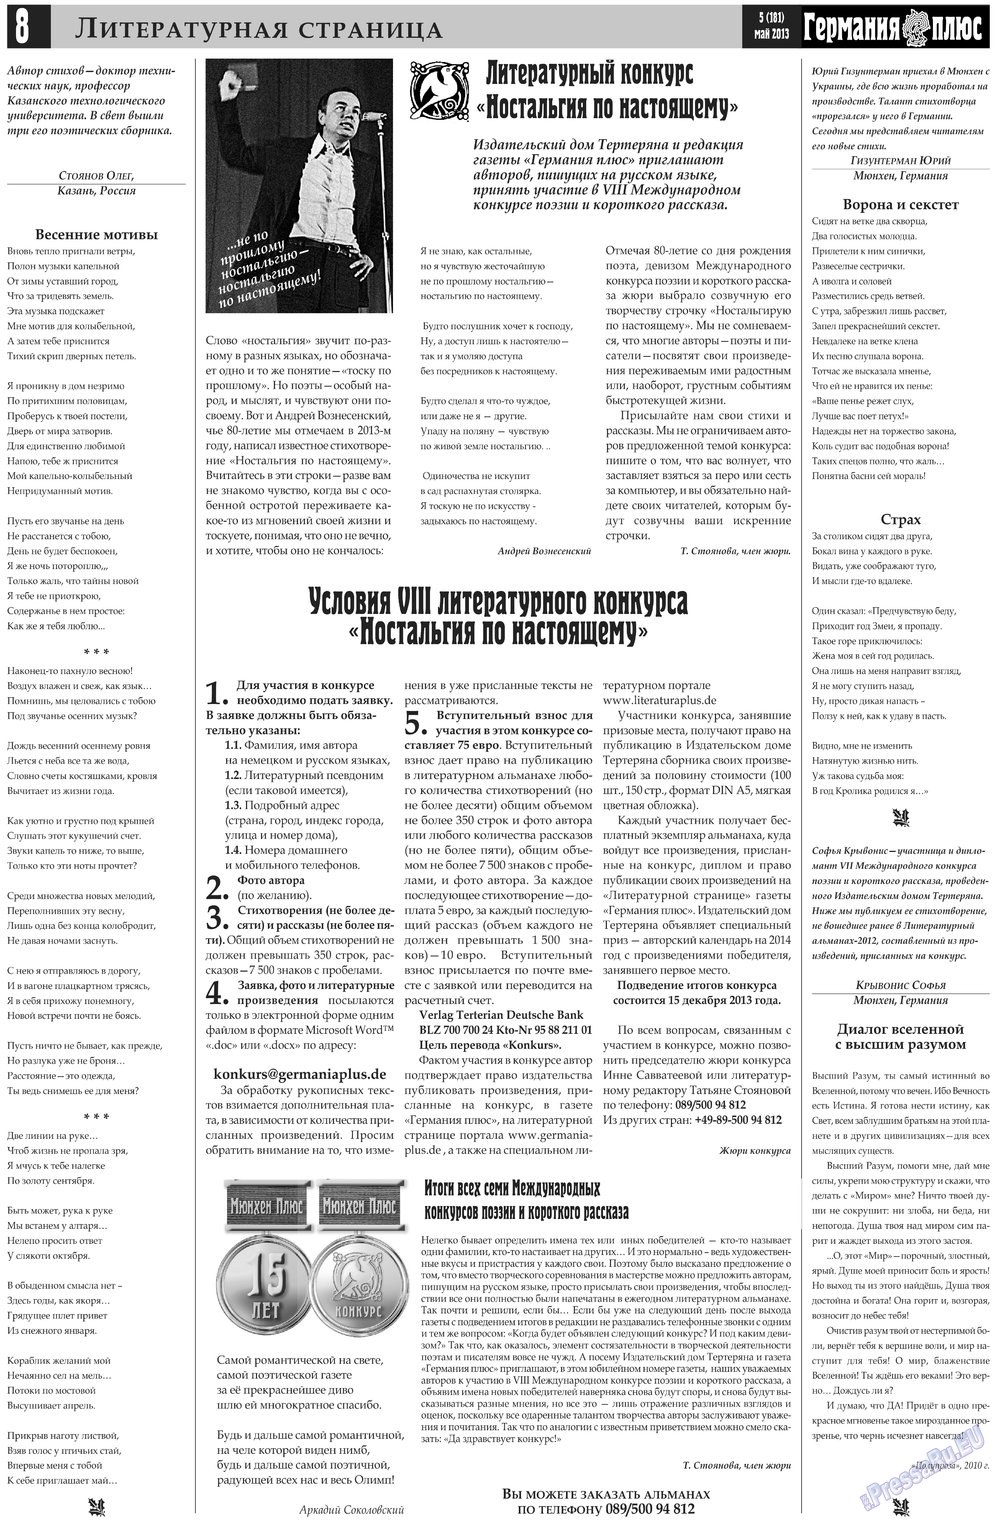 Германия плюс, газета. 2013 №5 стр.8